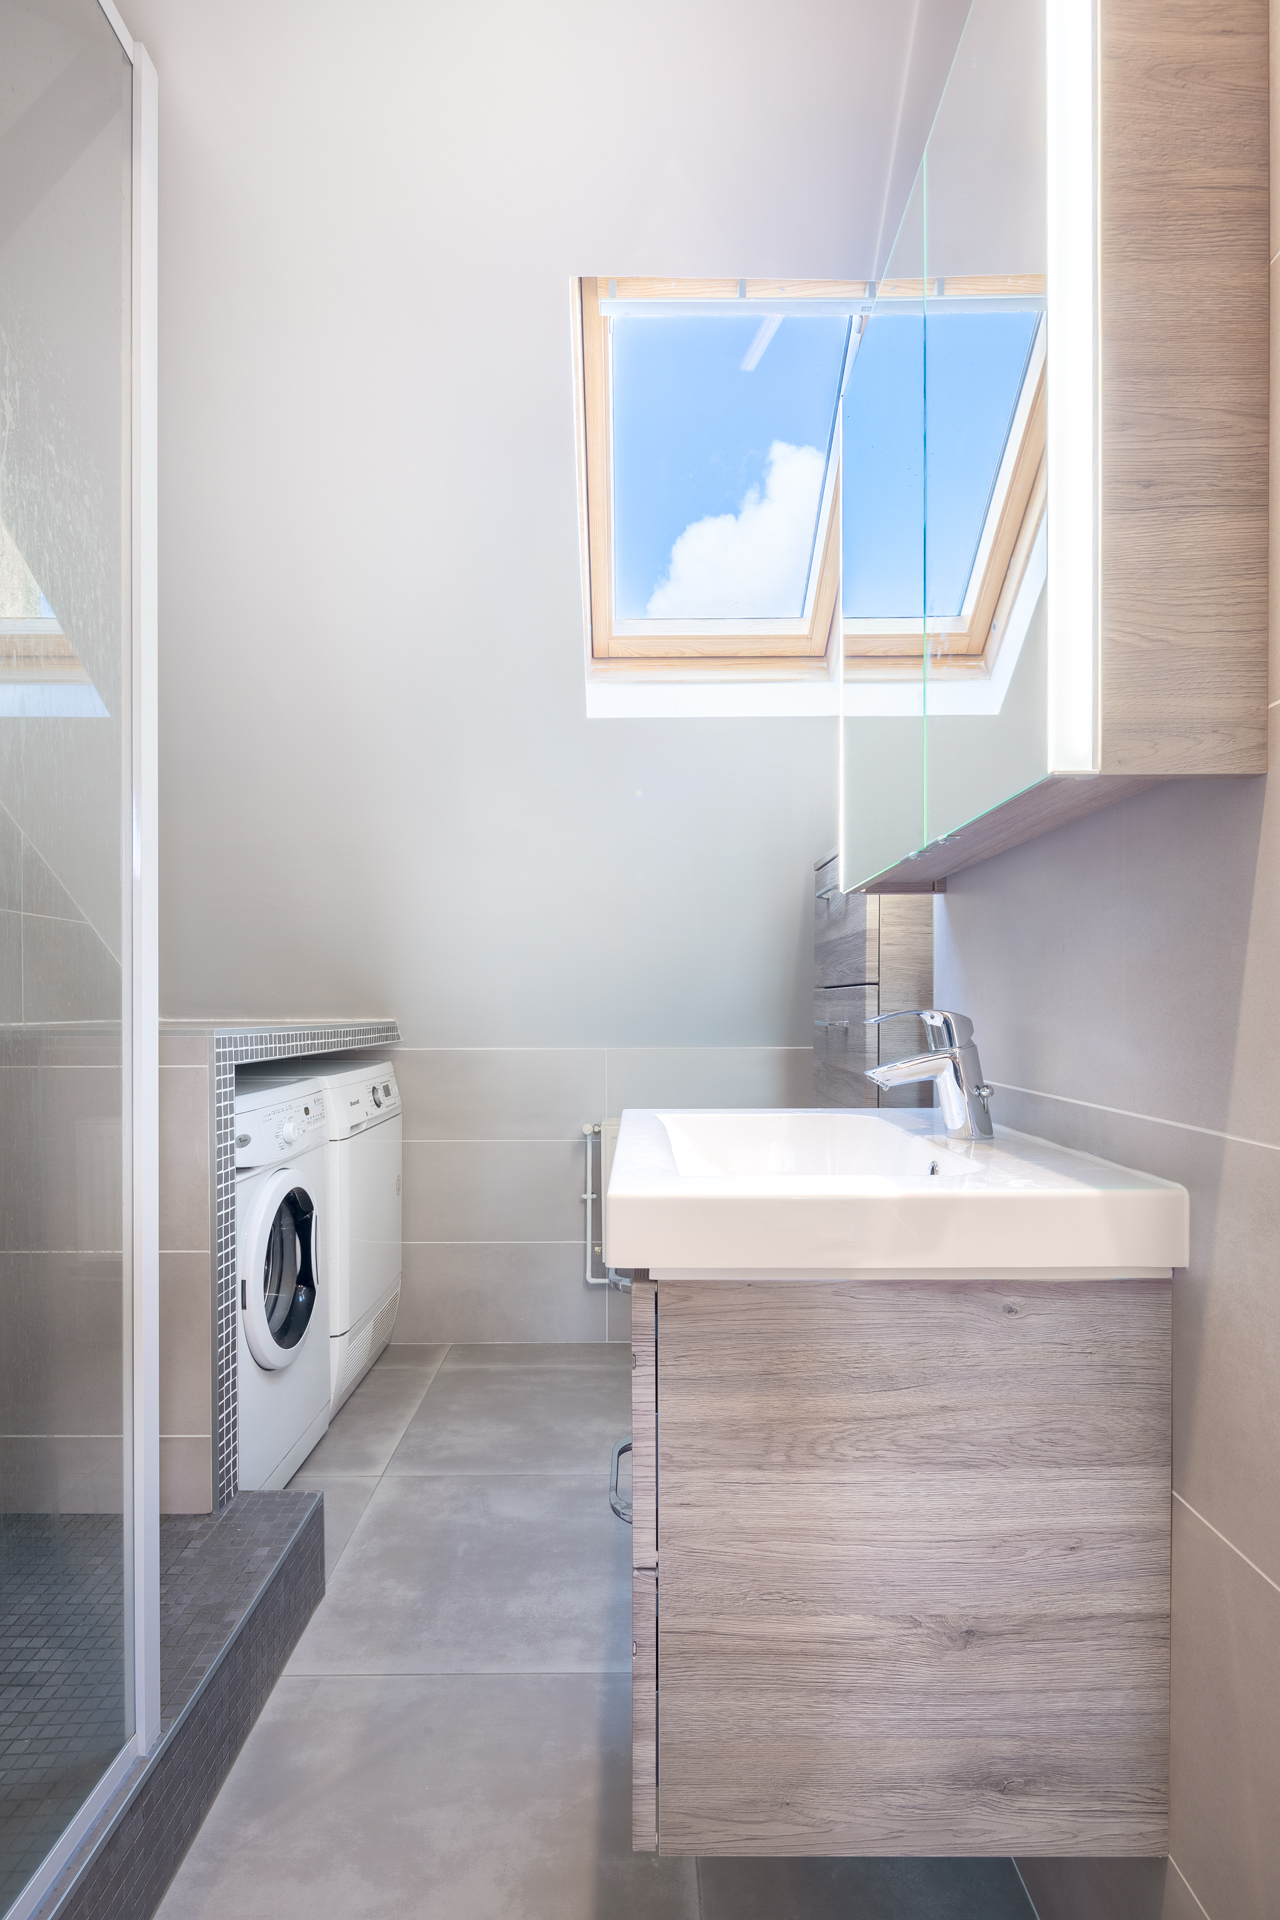 Vue de salle de bain toute en profondeur avec un lavabo, des placards, les machines pour le linge, une douche. Une fenêtre velux fait rentrer la lumière du jour avec un grand ciel bleu.